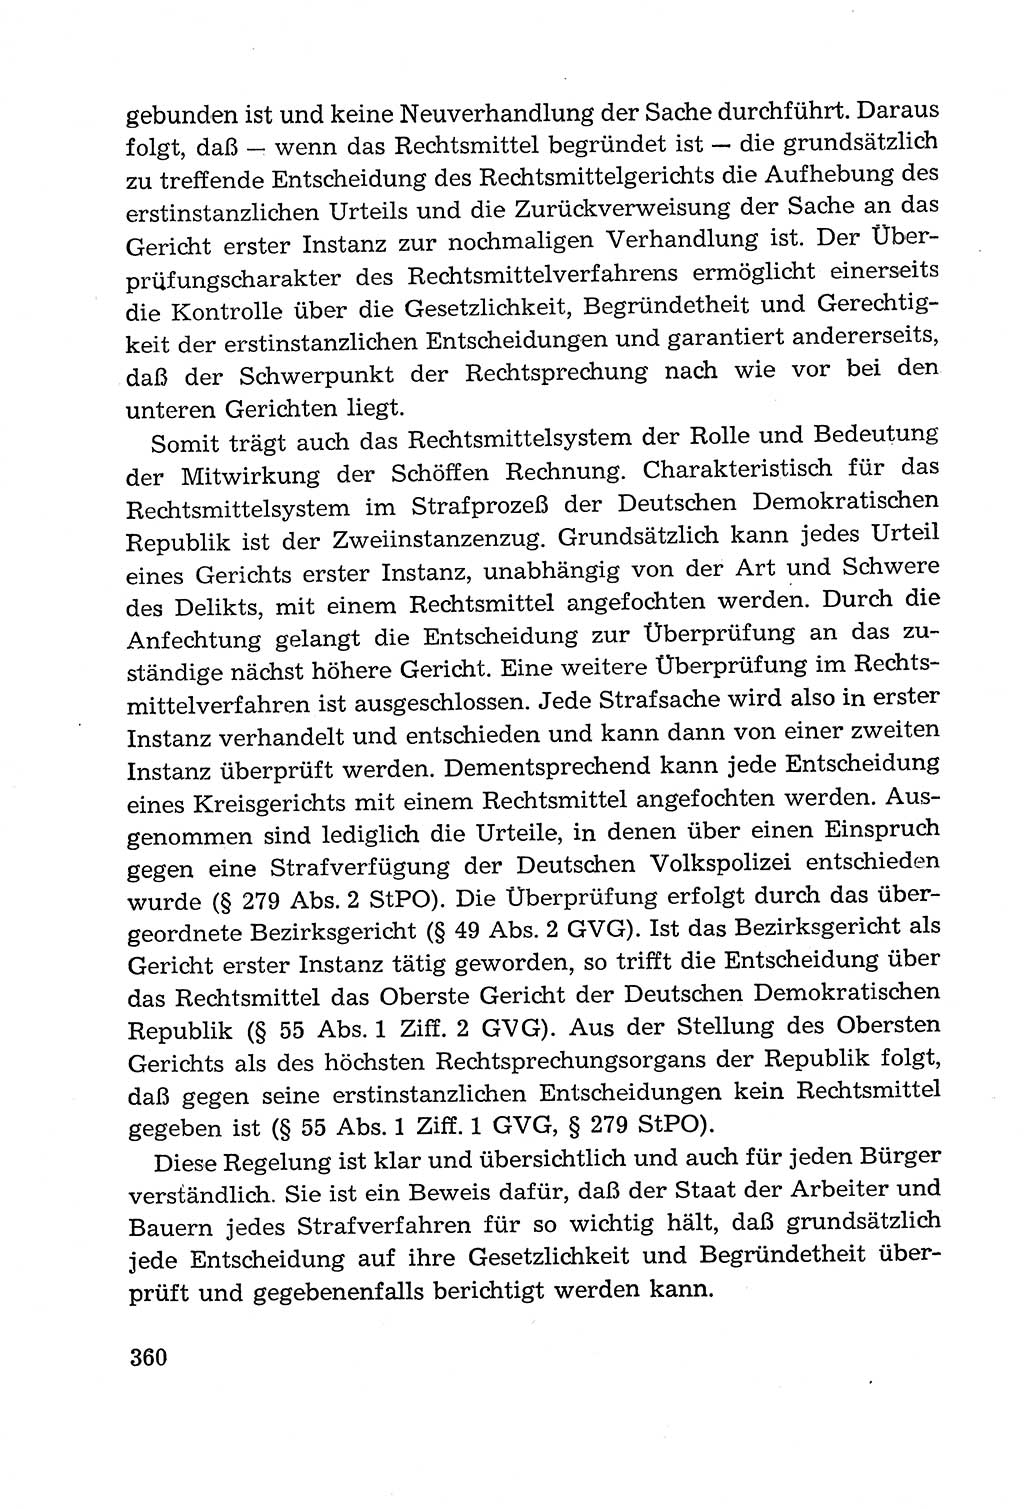 Leitfaden des Strafprozeßrechts der Deutschen Demokratischen Republik (DDR) 1959, Seite 360 (LF StPR DDR 1959, S. 360)